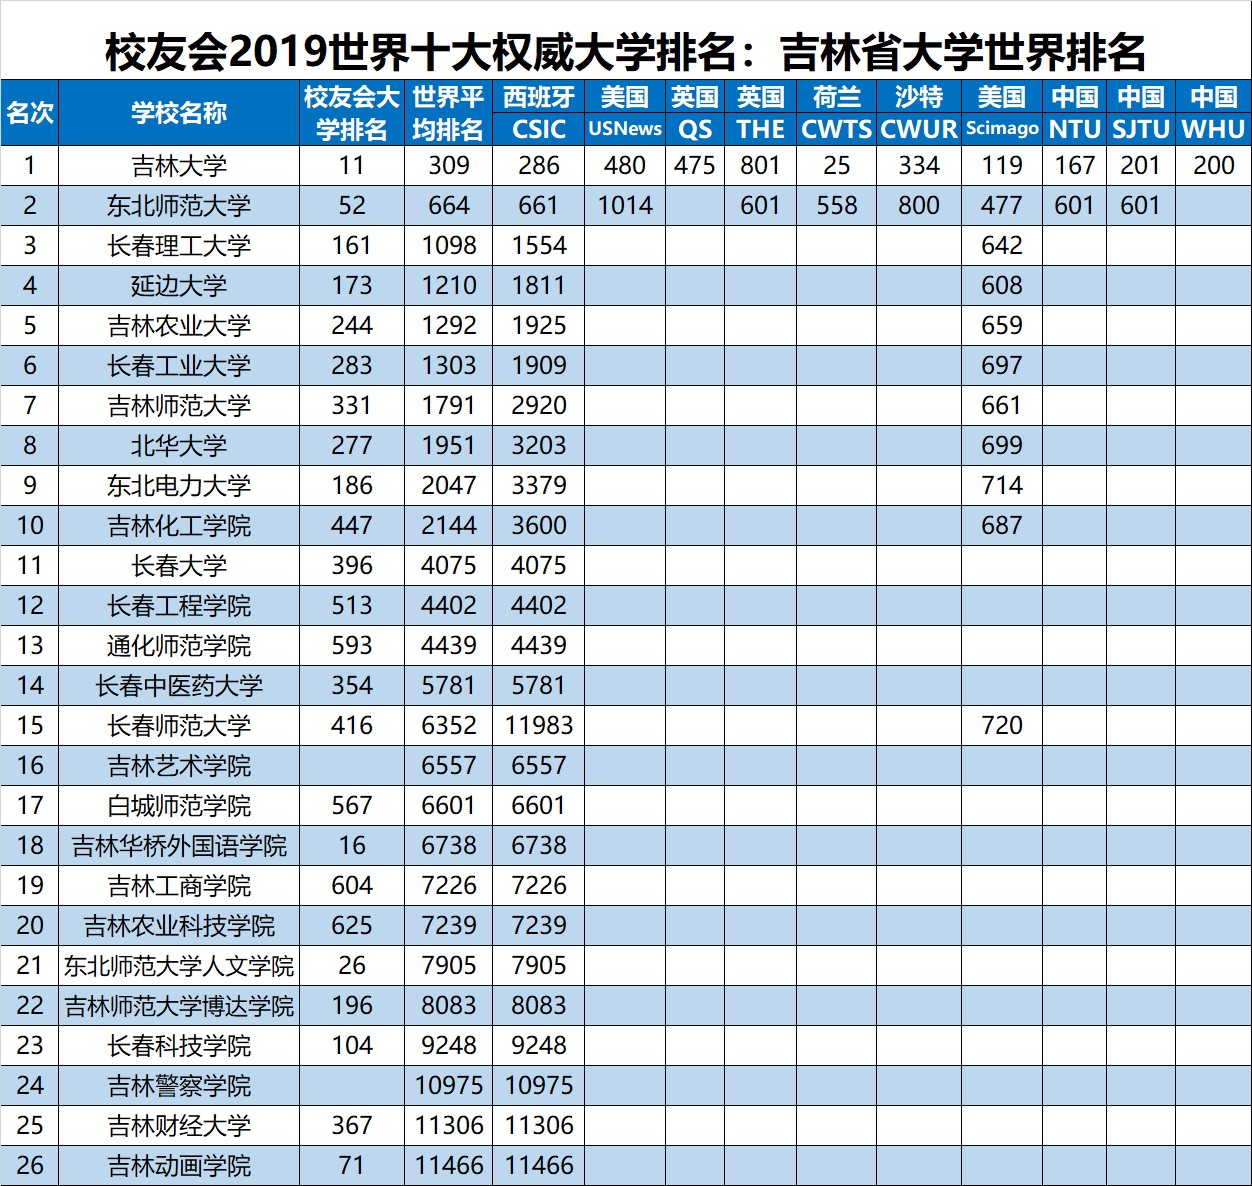 2019世界十大大学排名最新公布,中国哪所大学